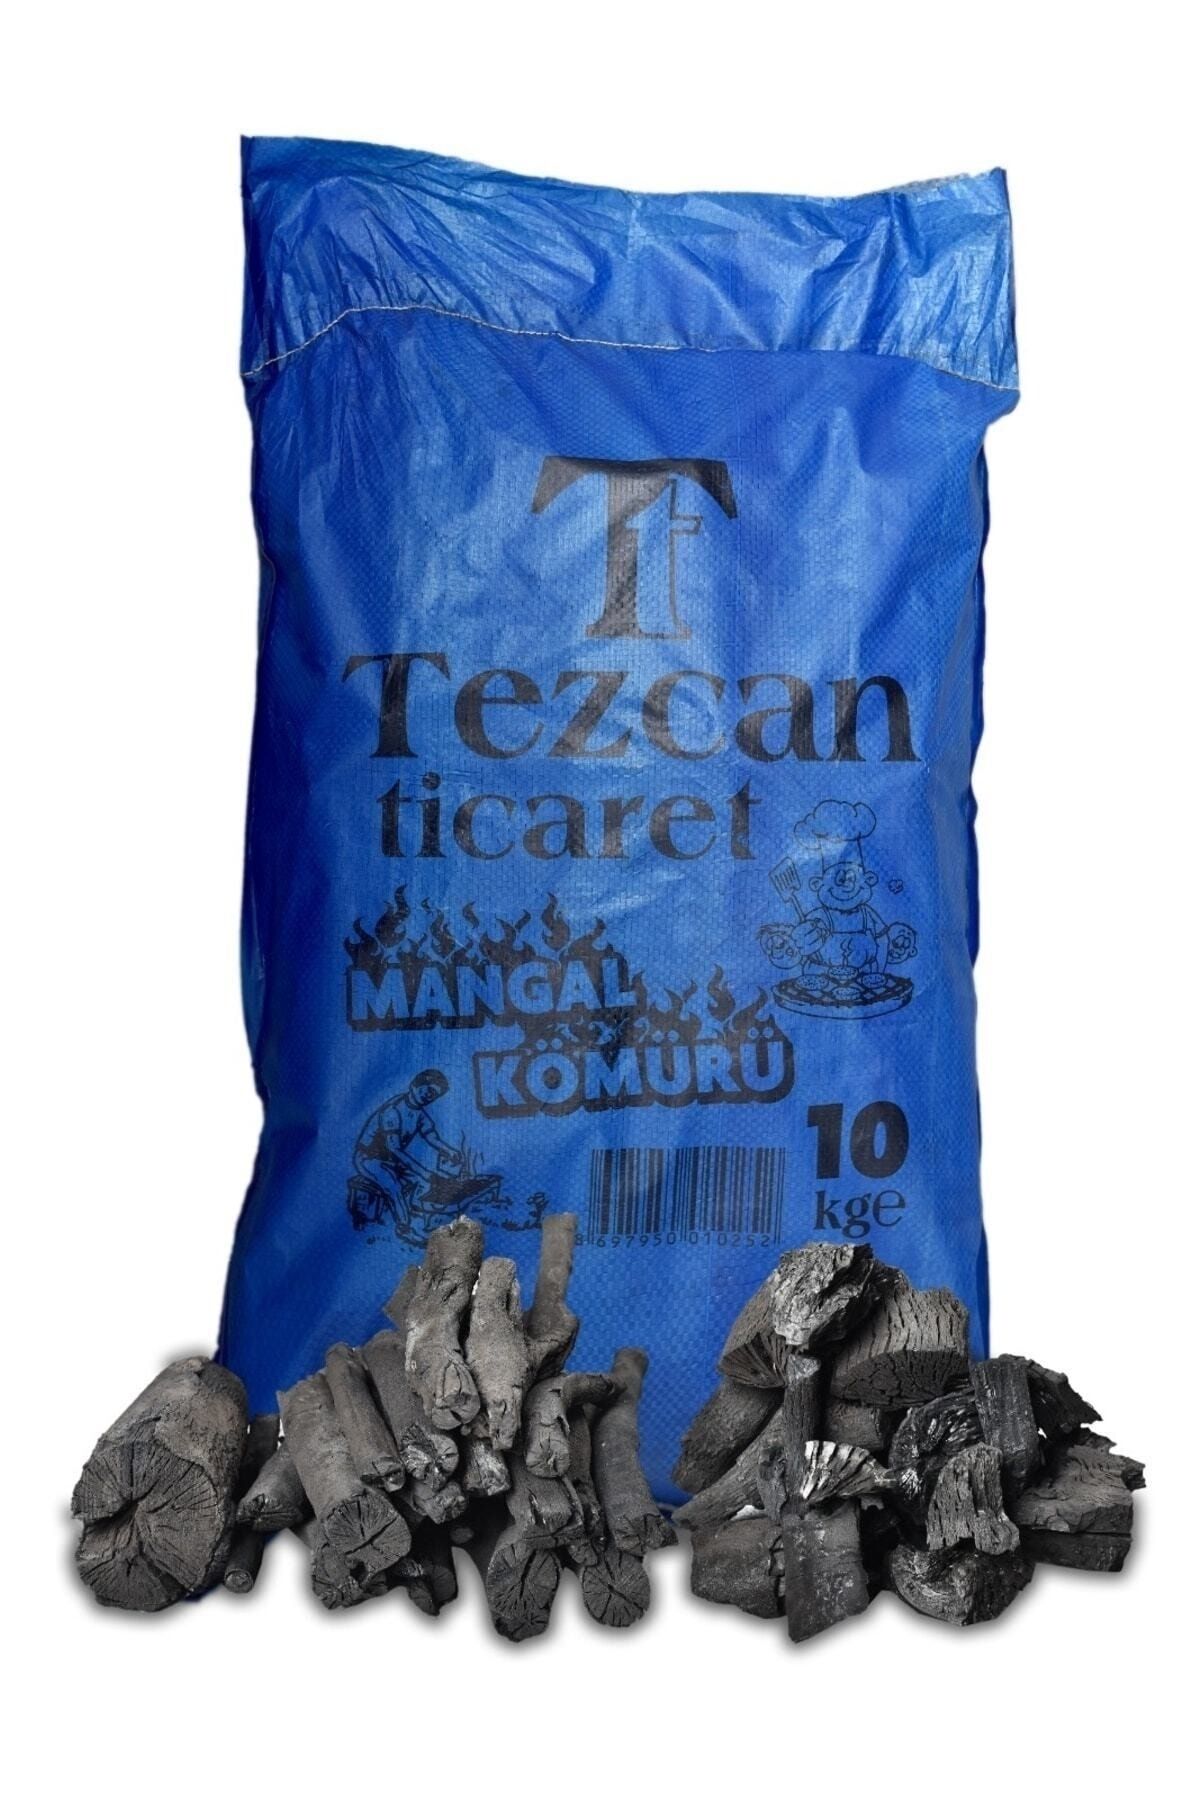 Tezcanlar Tezcan Mangal Kömürü 10 kg